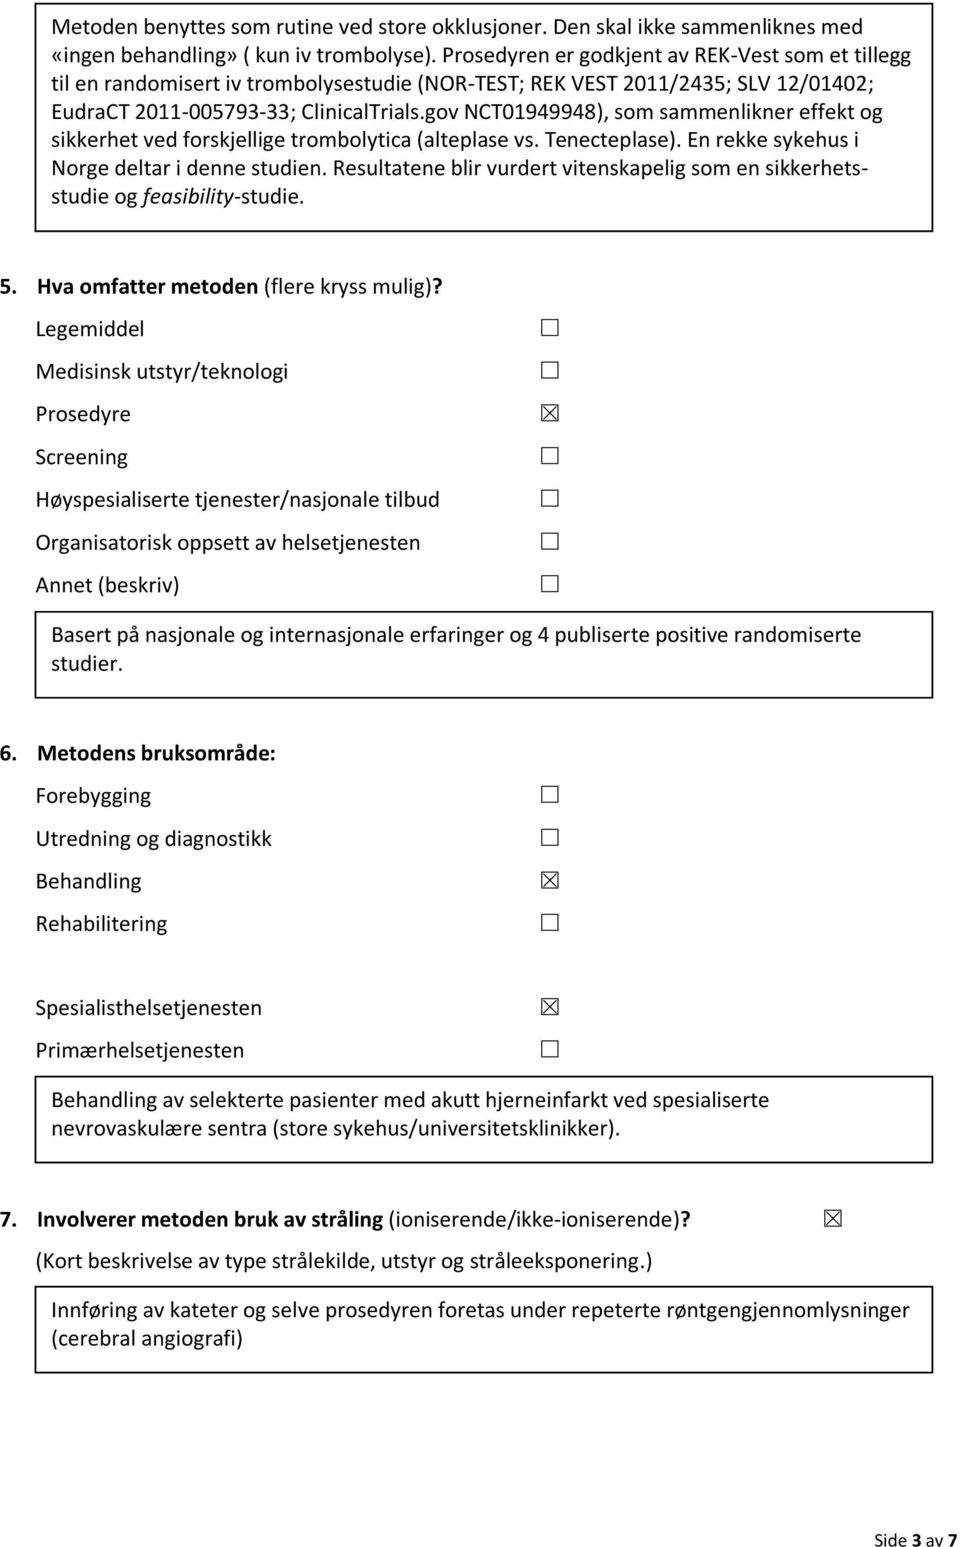 gov NCT01949948), som sammenlikner effekt og sikkerhet ved forskjellige trombolytica (alteplase vs. Tenecteplase). En rekke sykehus i Norge deltar i denne studien.